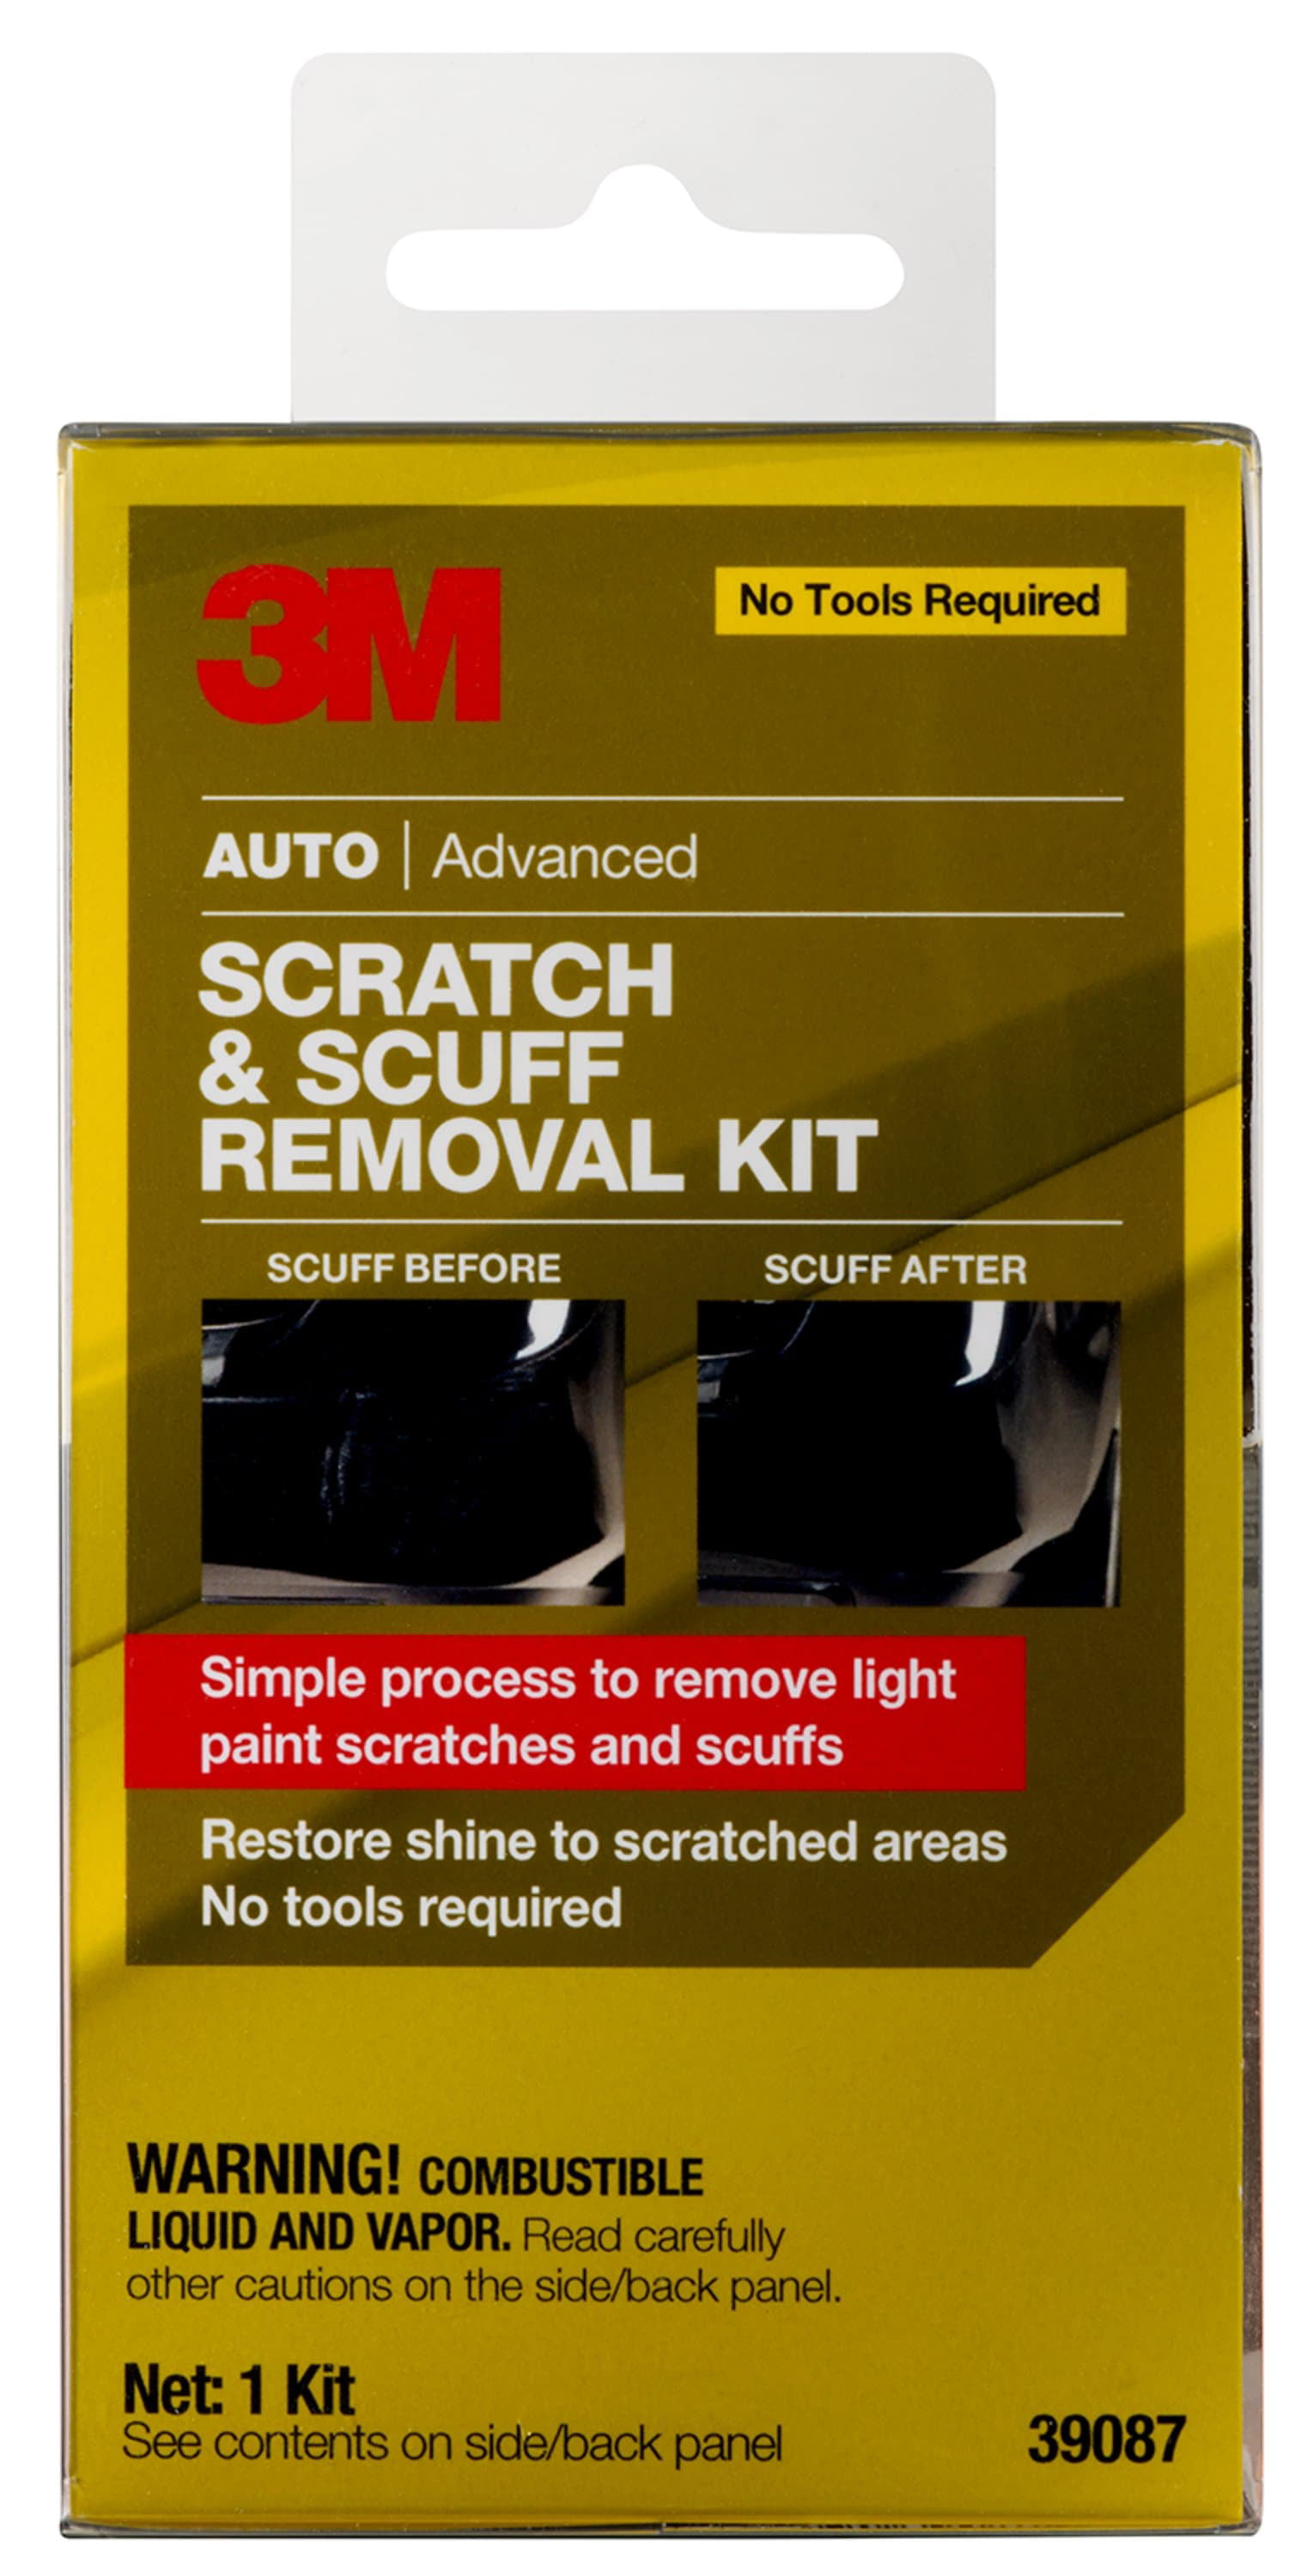 3M Auto Advanced Scratch and Scuff Removal Kit 4 pc Box